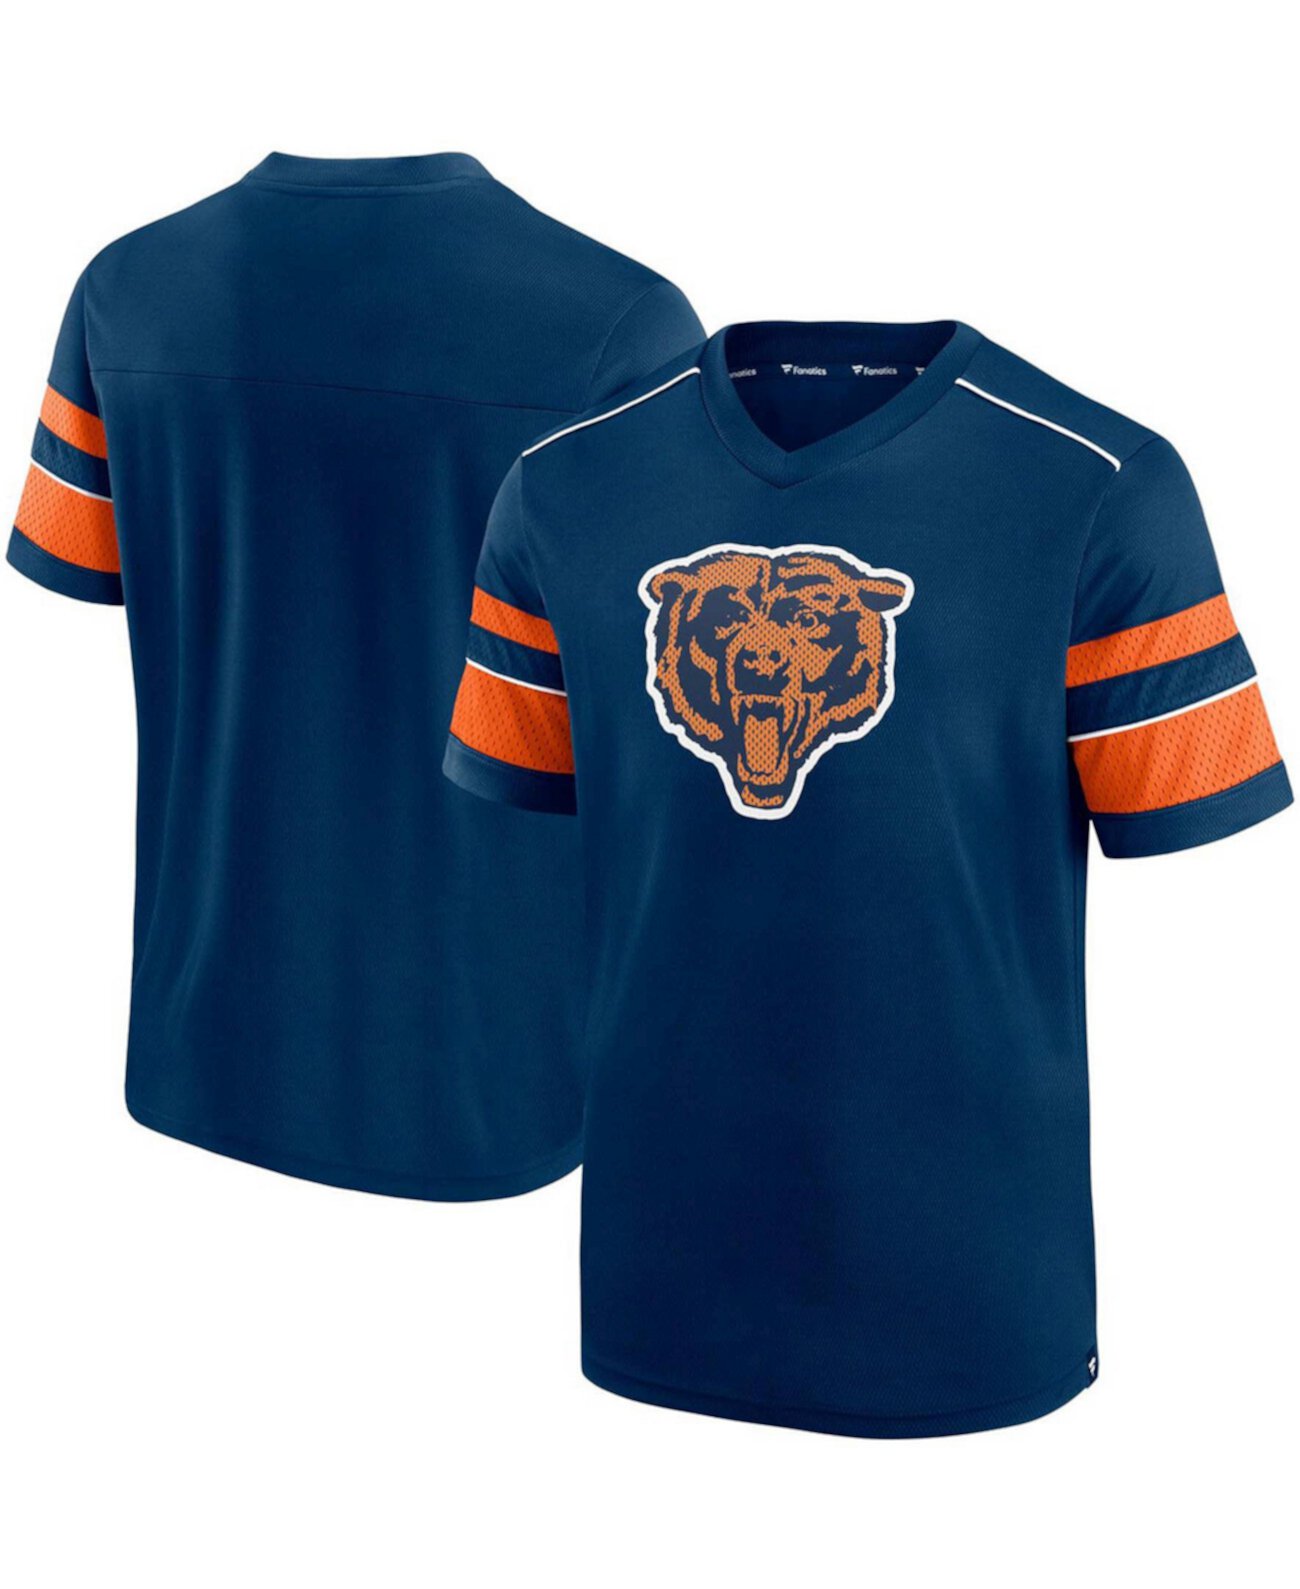 Мужская футболка с V-образным вырезом и текстурированным логотипом Chicago Bears с хэшмарком темно-синего цвета Fanatics